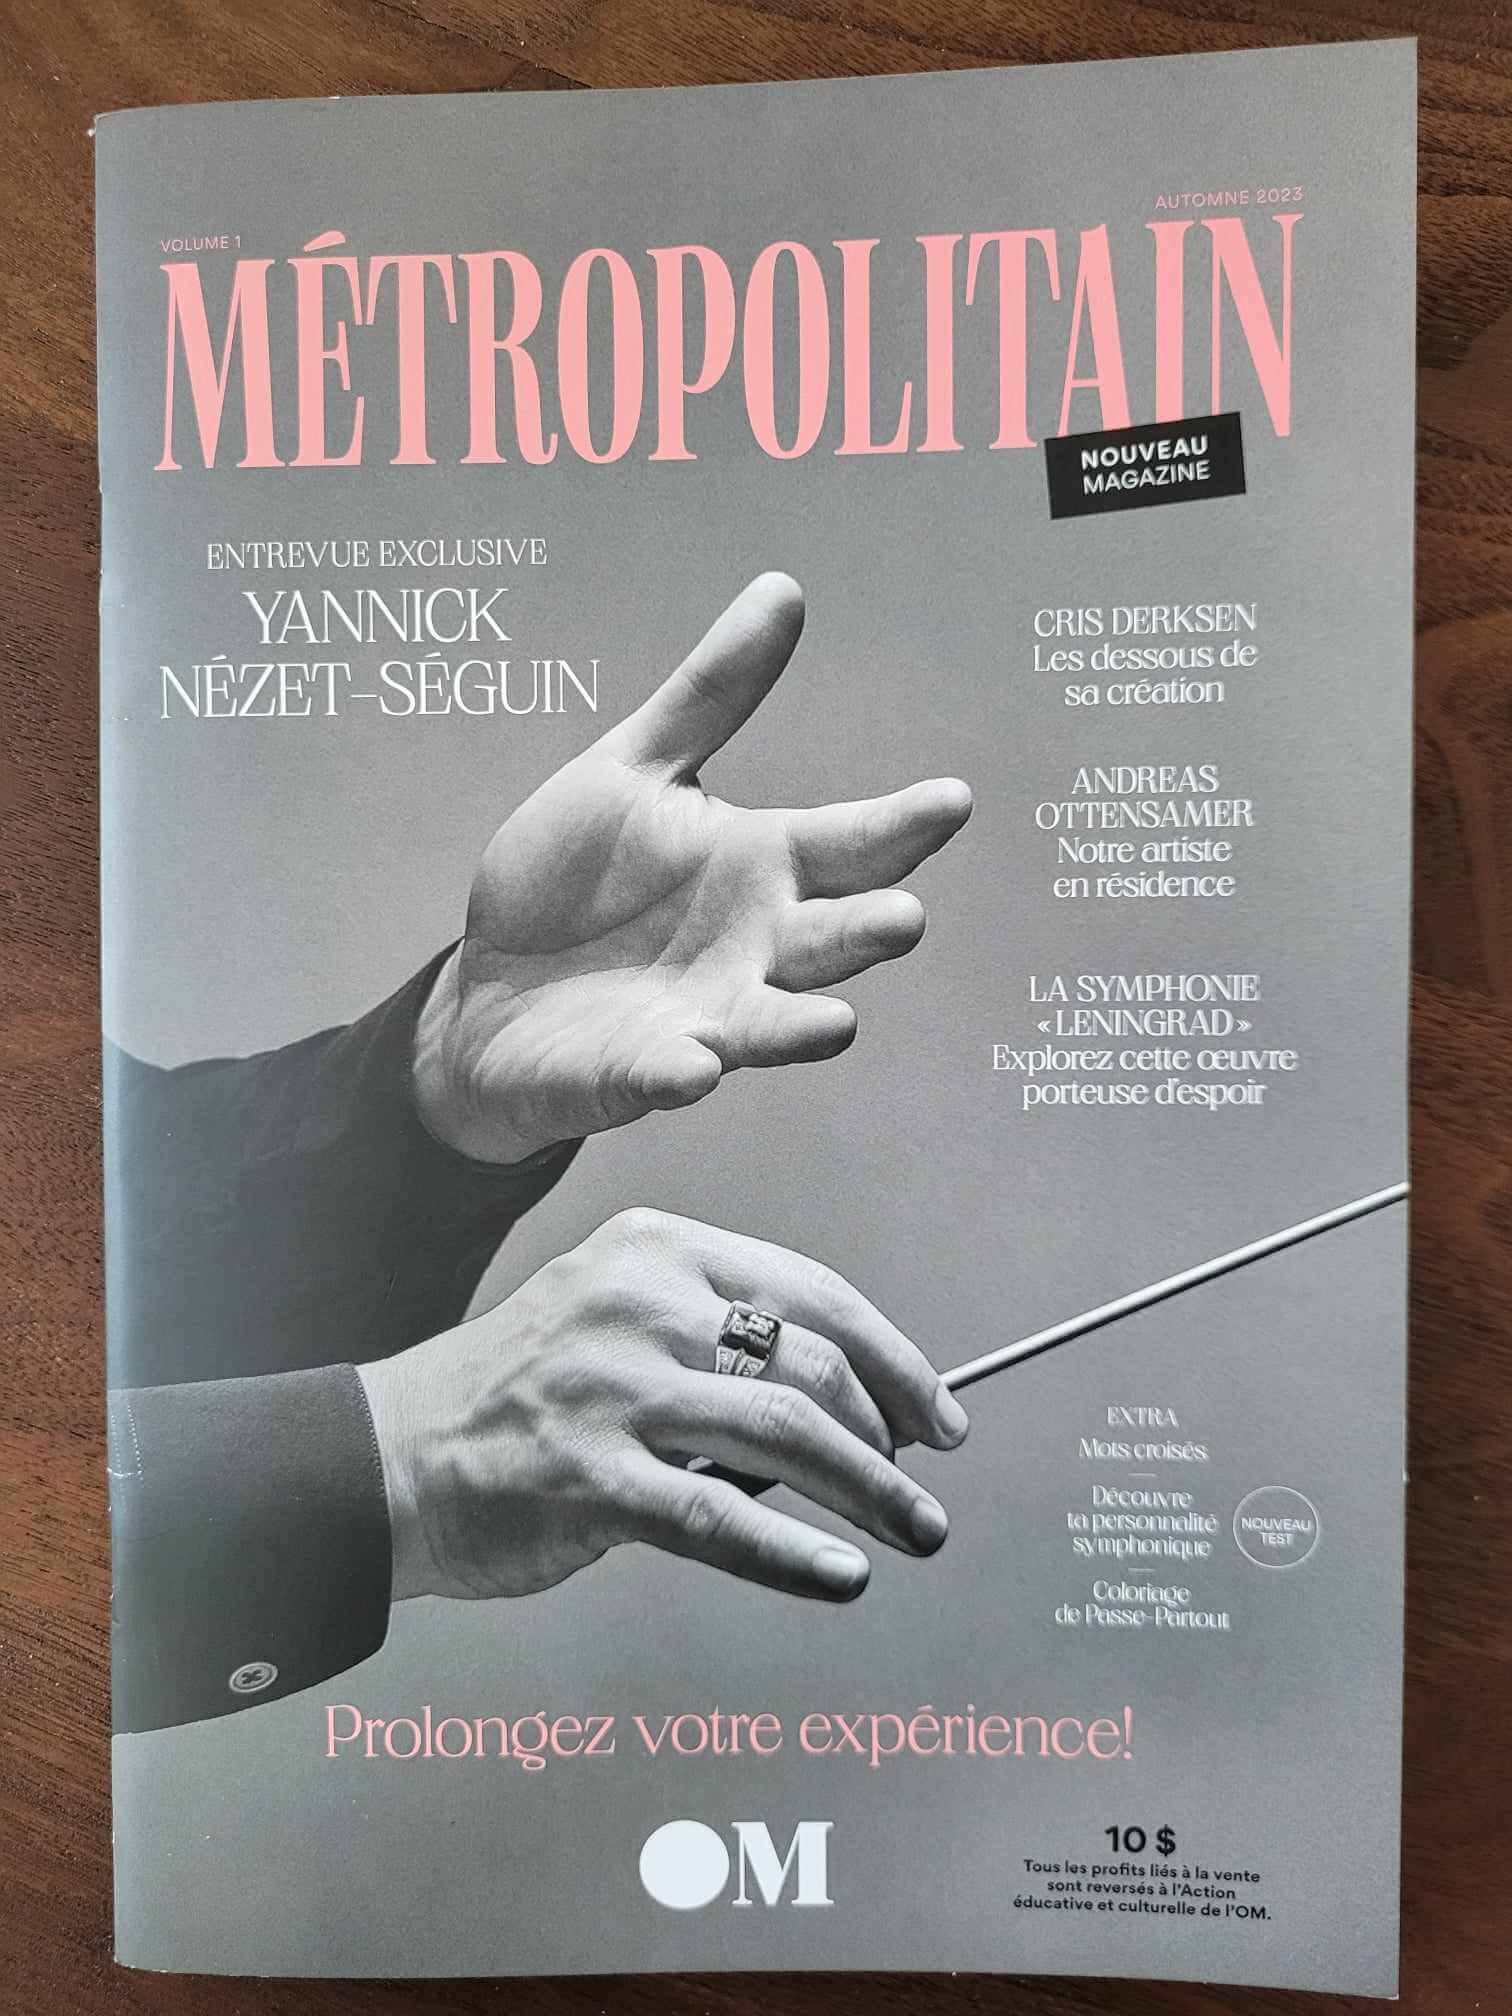 Le magazine Métropolitain, volume 1. (Crédit photo: Caroline Rodgers)